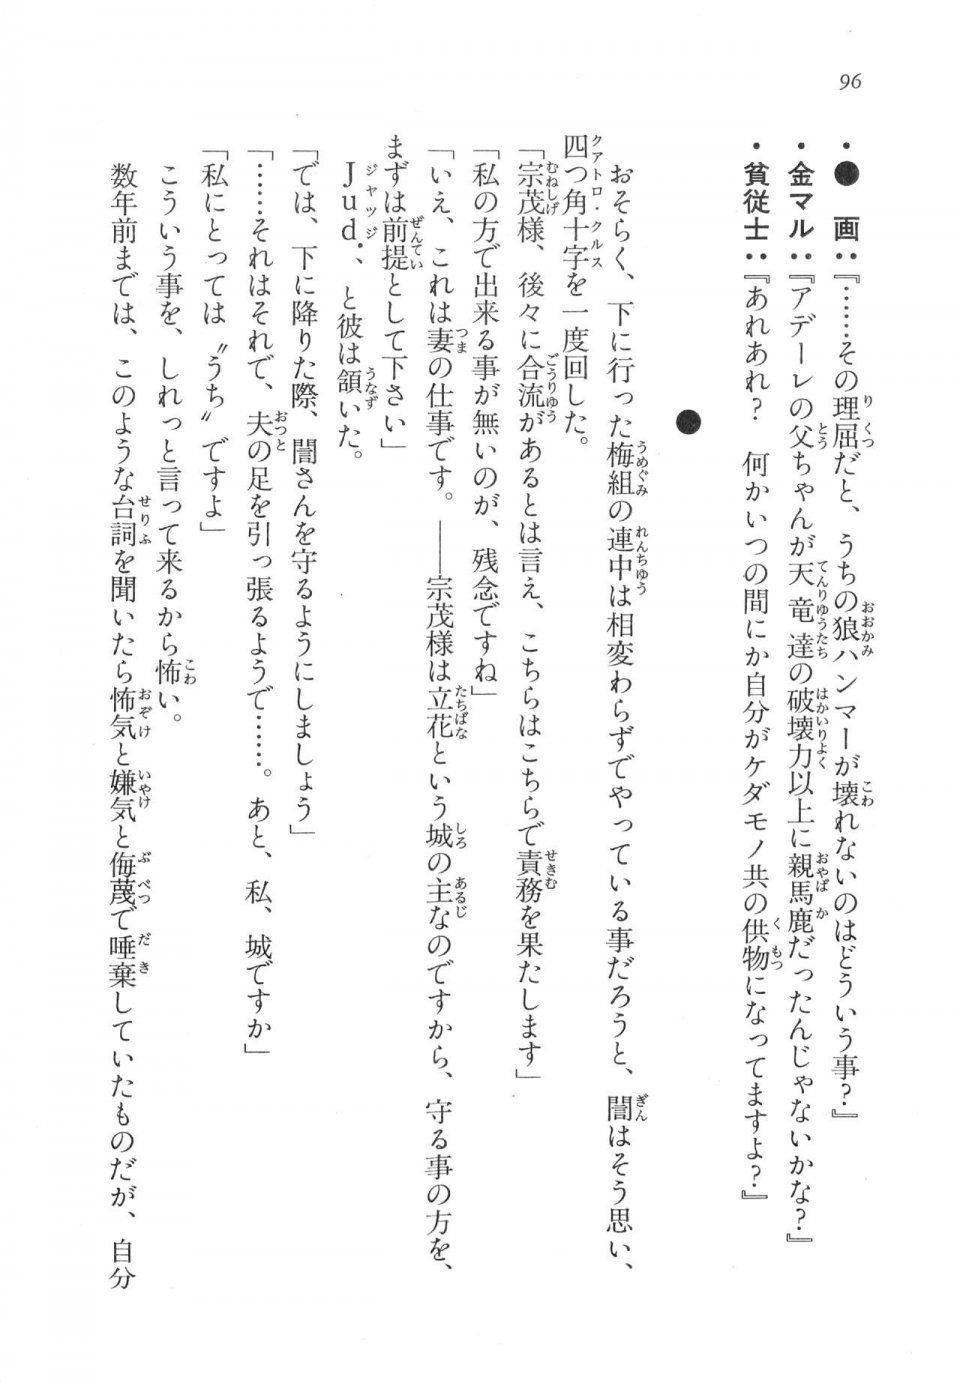 Kyoukai Senjou no Horizon LN Vol 17(7B) - Photo #96